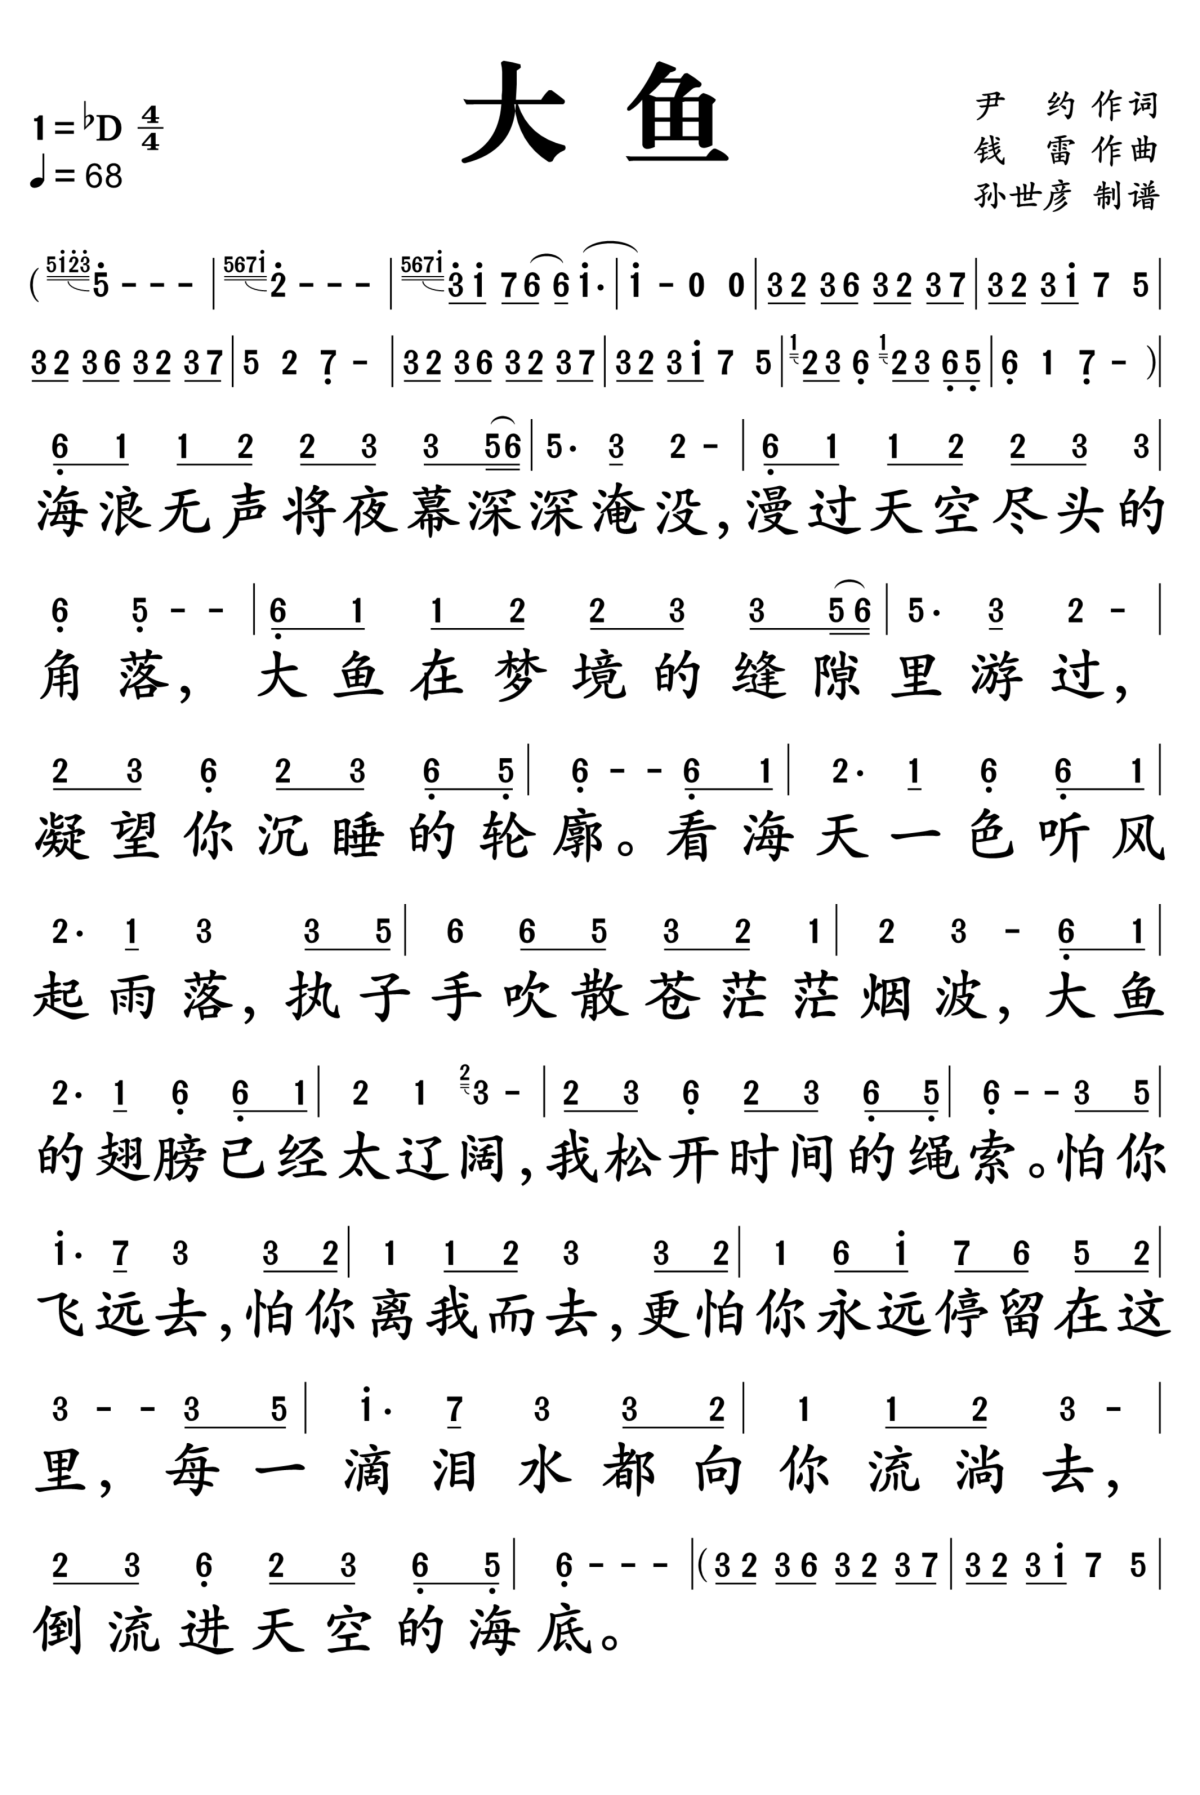 (非严谨的)中国传统音乐乐谱资料整理(番外)——《大鱼》工尺谱